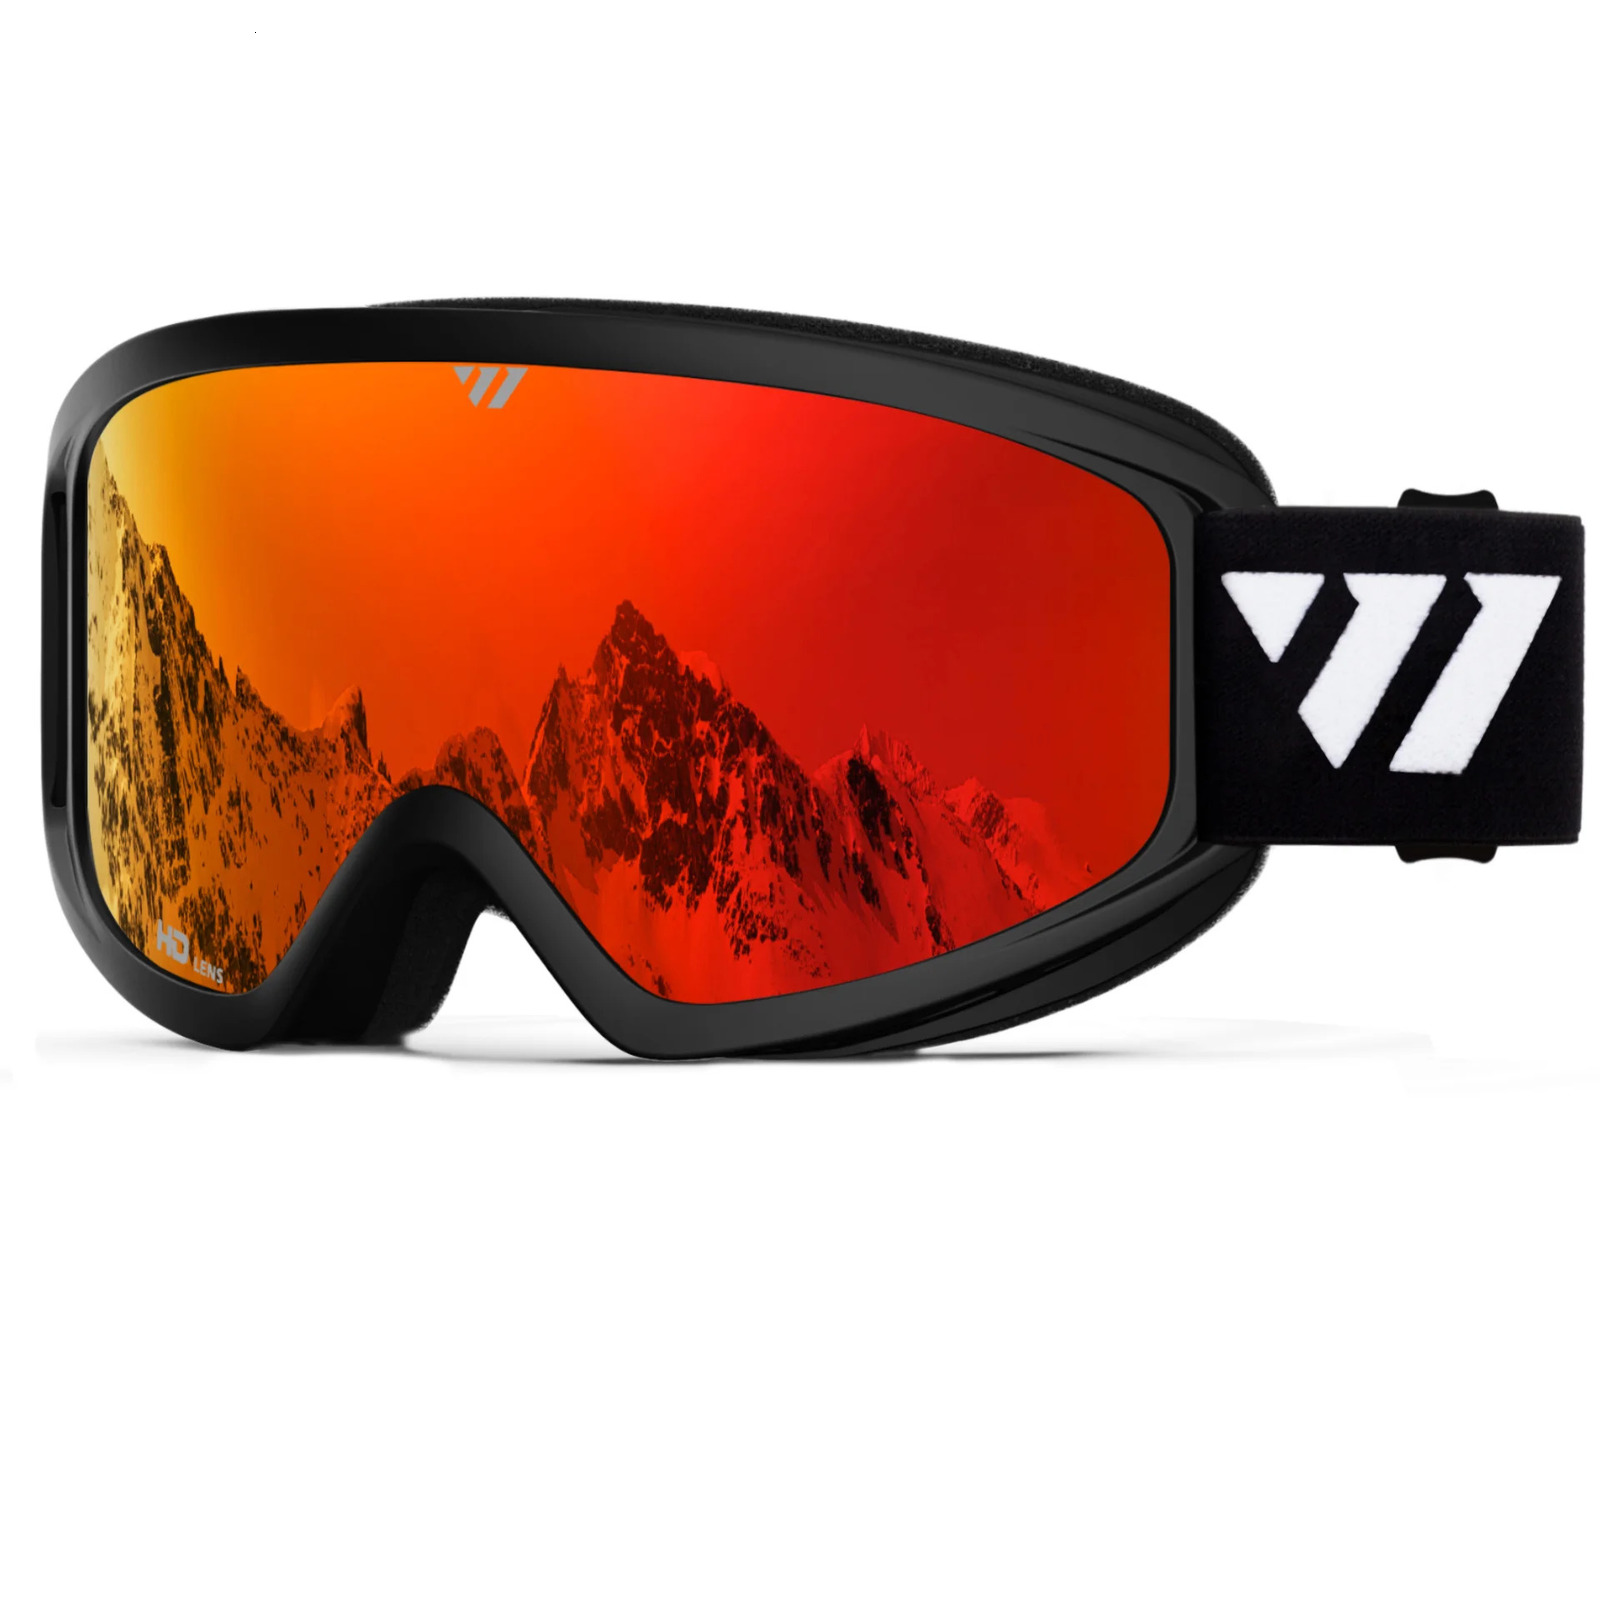 Juli marka profesyonel kayak gözlükleri çift katmanlar lens anti-fog uv400 kayak gözlükleri kayak snowboard gözlükleriw gözlükleri erkek kadınlar w1 231221